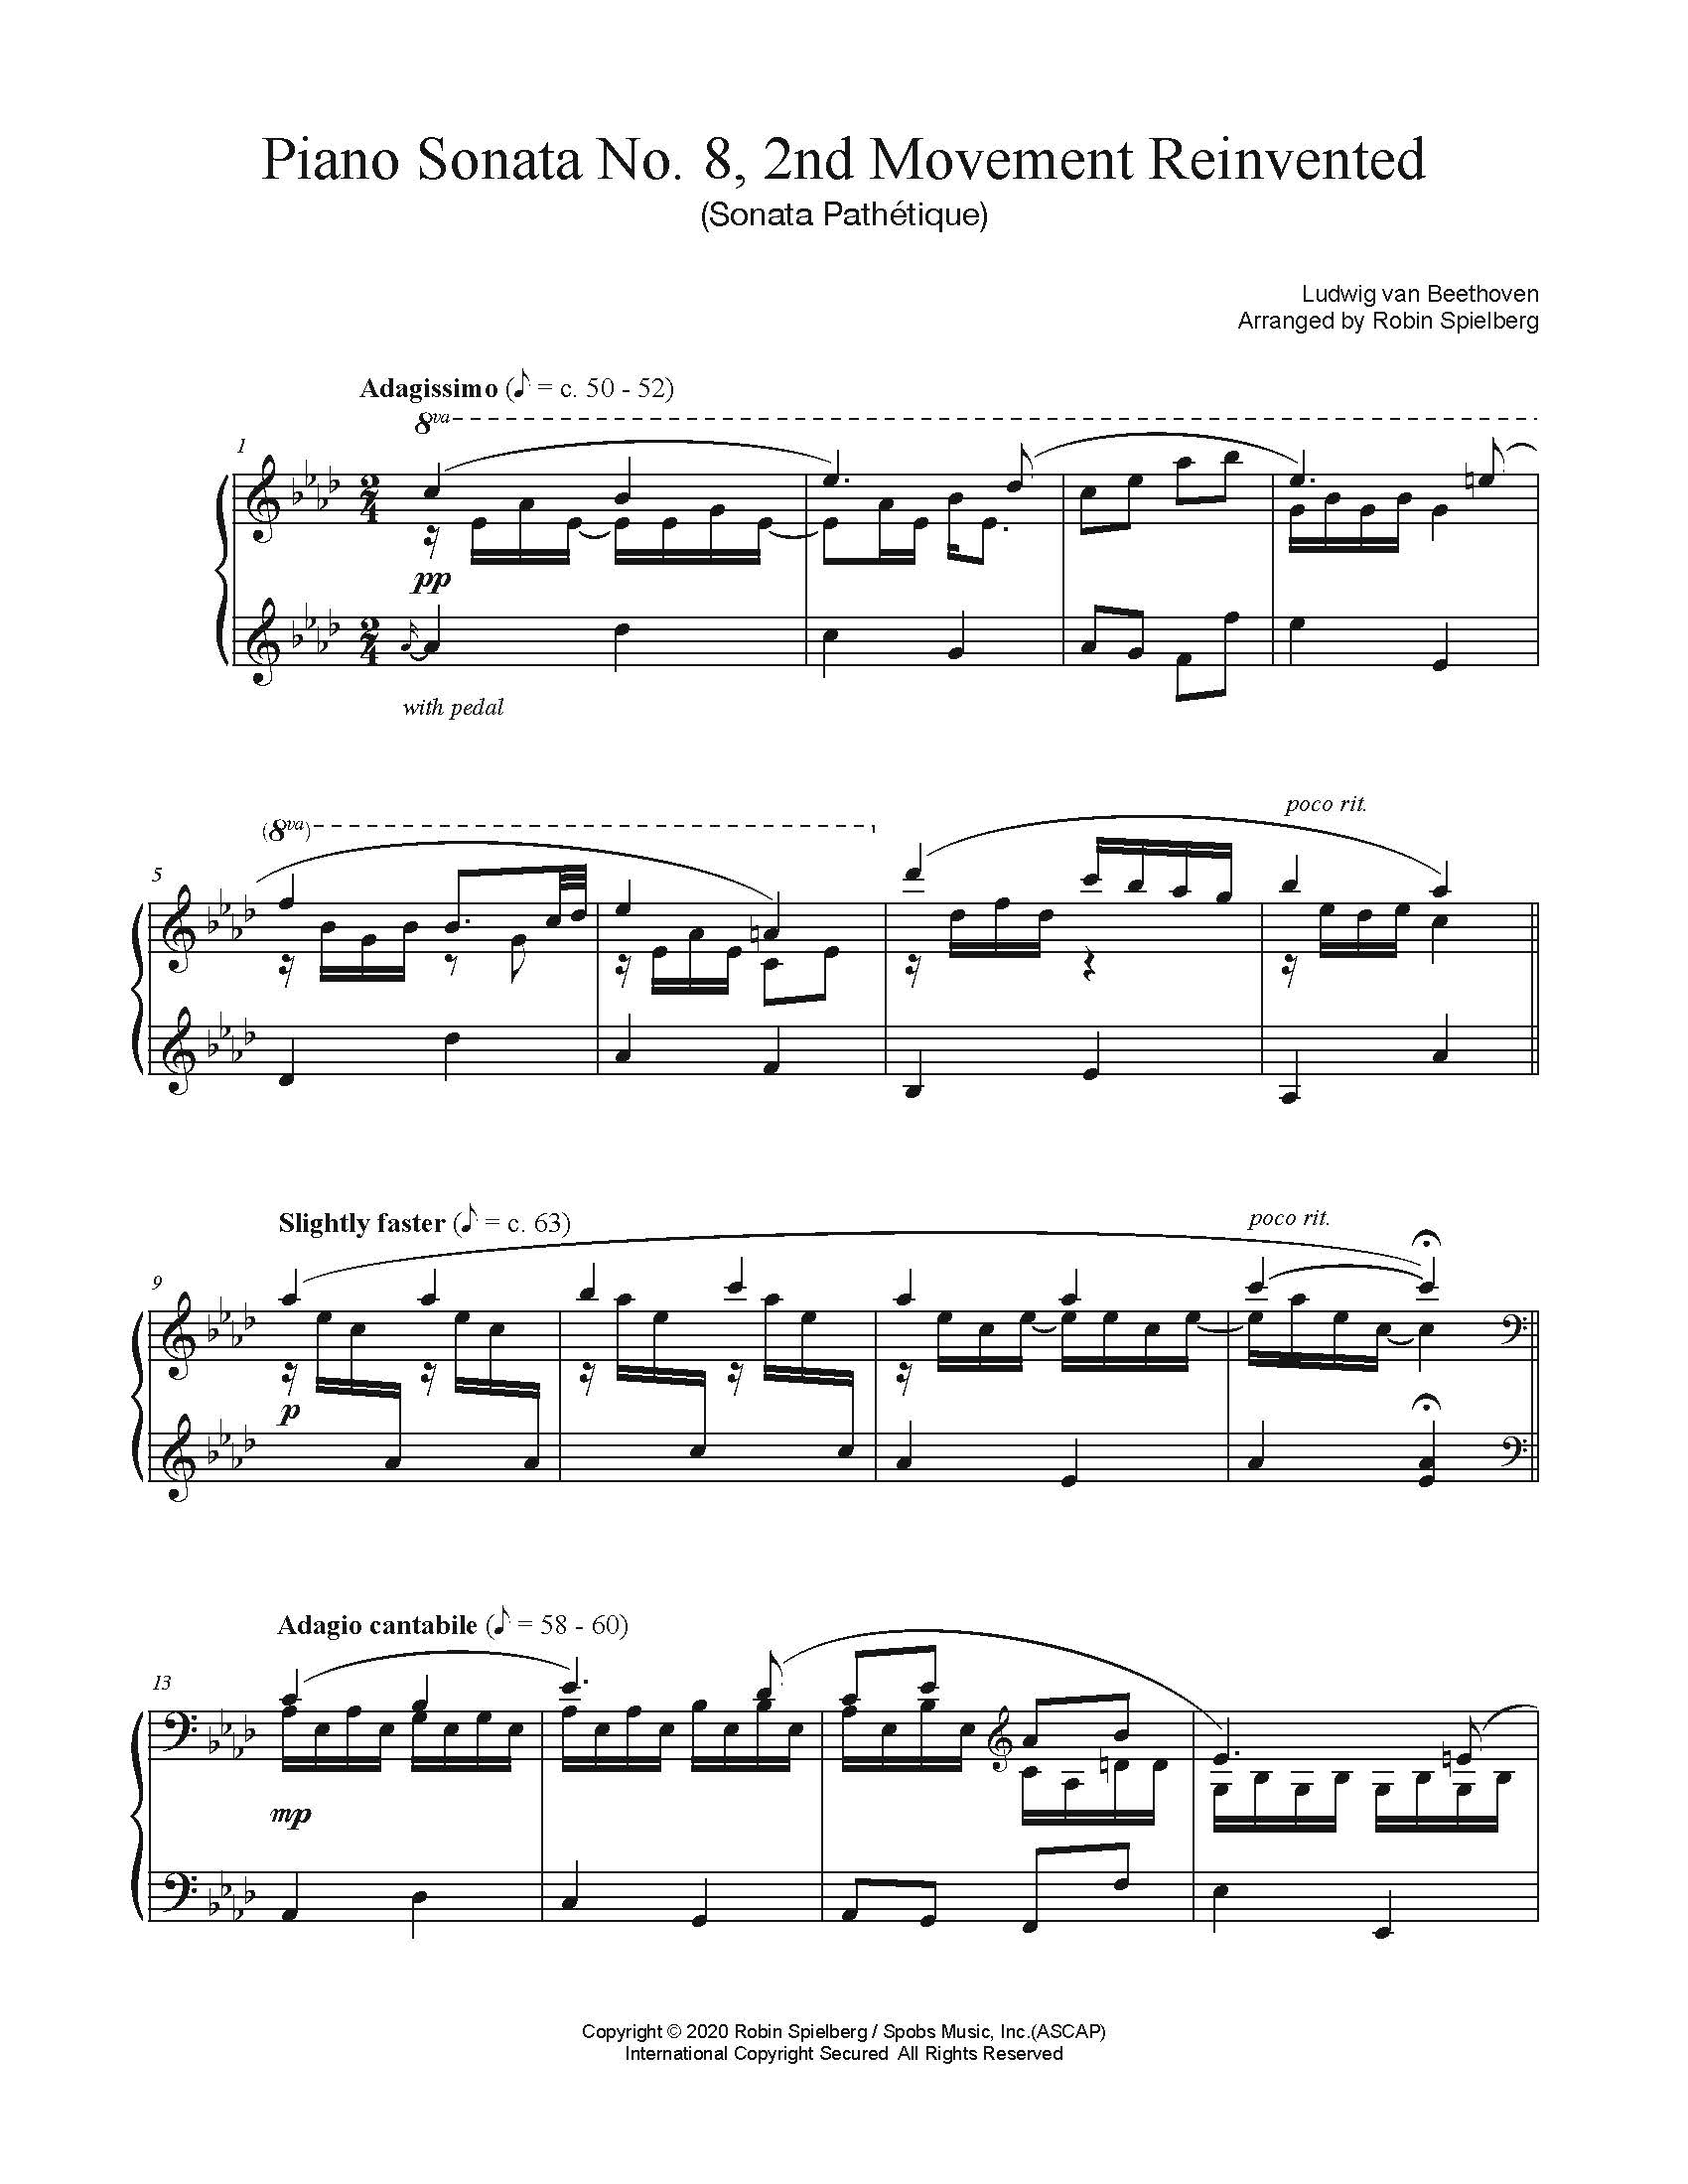 Piano Sonata No. 8, 2nd Movement Sonata Pathétique ~ Robin Spielberg ~ Piano Music